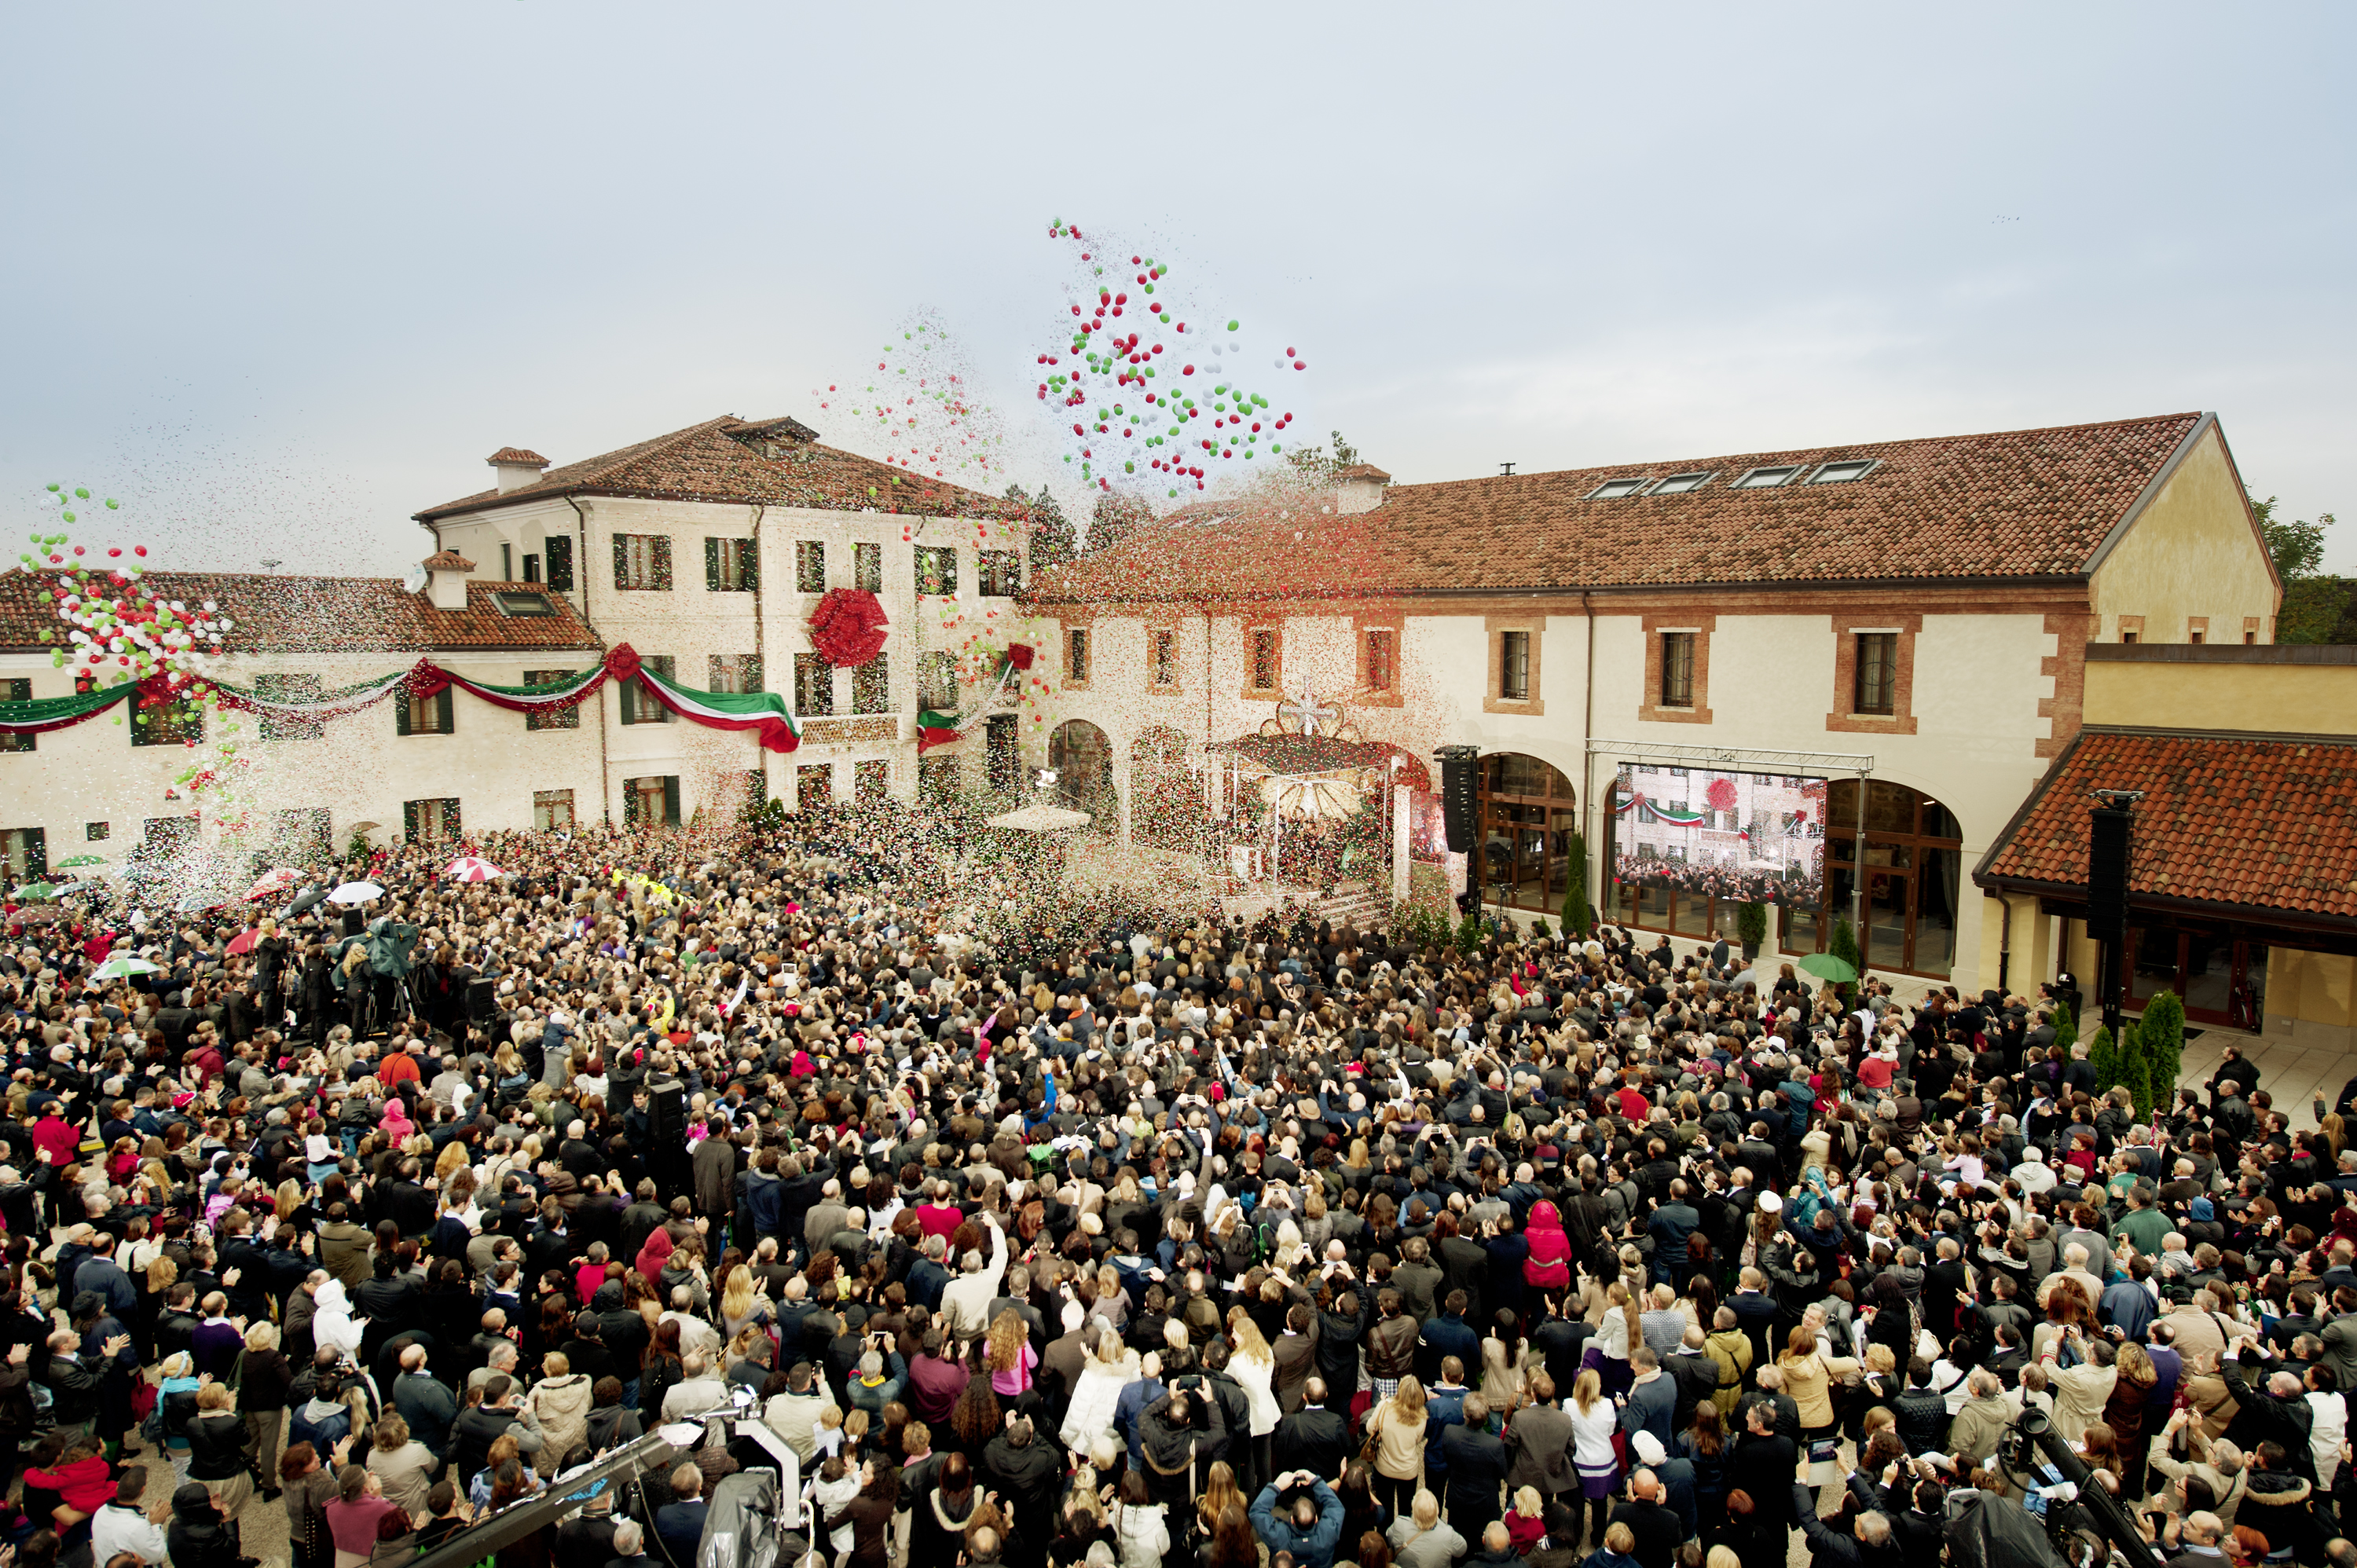 27 ottobre 2021 la Chiesa di Scientology di Padova celebra il 9° anniversario dell’Inaugurazione  nella storica Villa Francesoni Lanza.